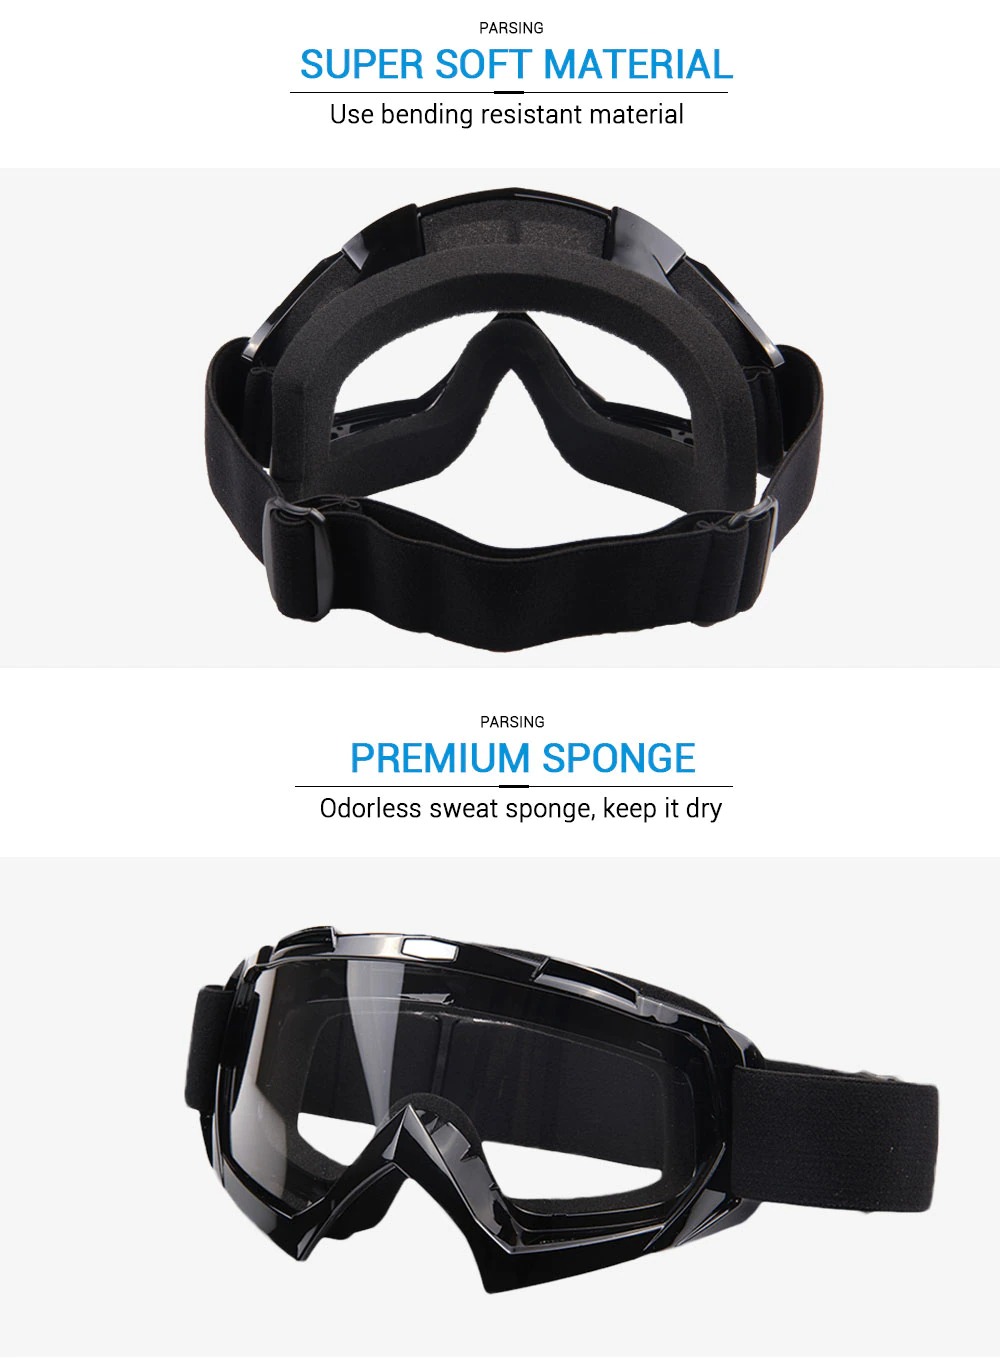 รูปภาพเพิ่มเติมเกี่ยวกับ แว่นกันลม แว่นกันแดด แว่นกันลมมอไซค์ Motocross Goggles Glasses MX Off Road Masque Helmets Goggles Ski Sport Gafas for Motorcycle Dirt